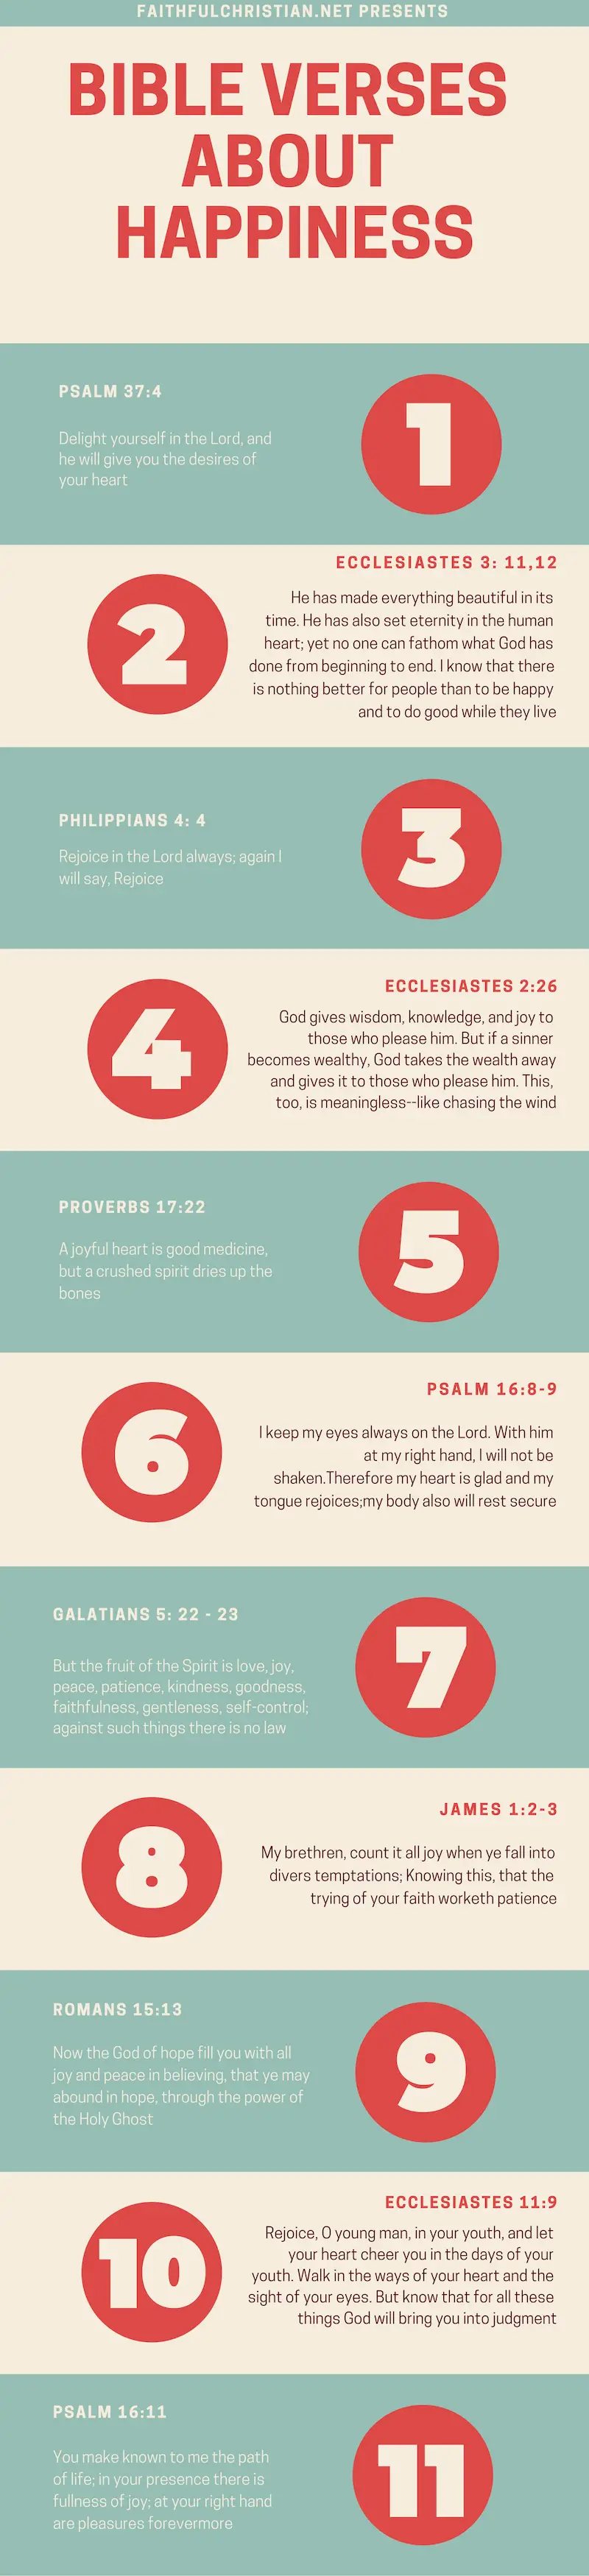 Diez versículos bíblicos sobre la felicidad y el gozo: Escrituras importantes